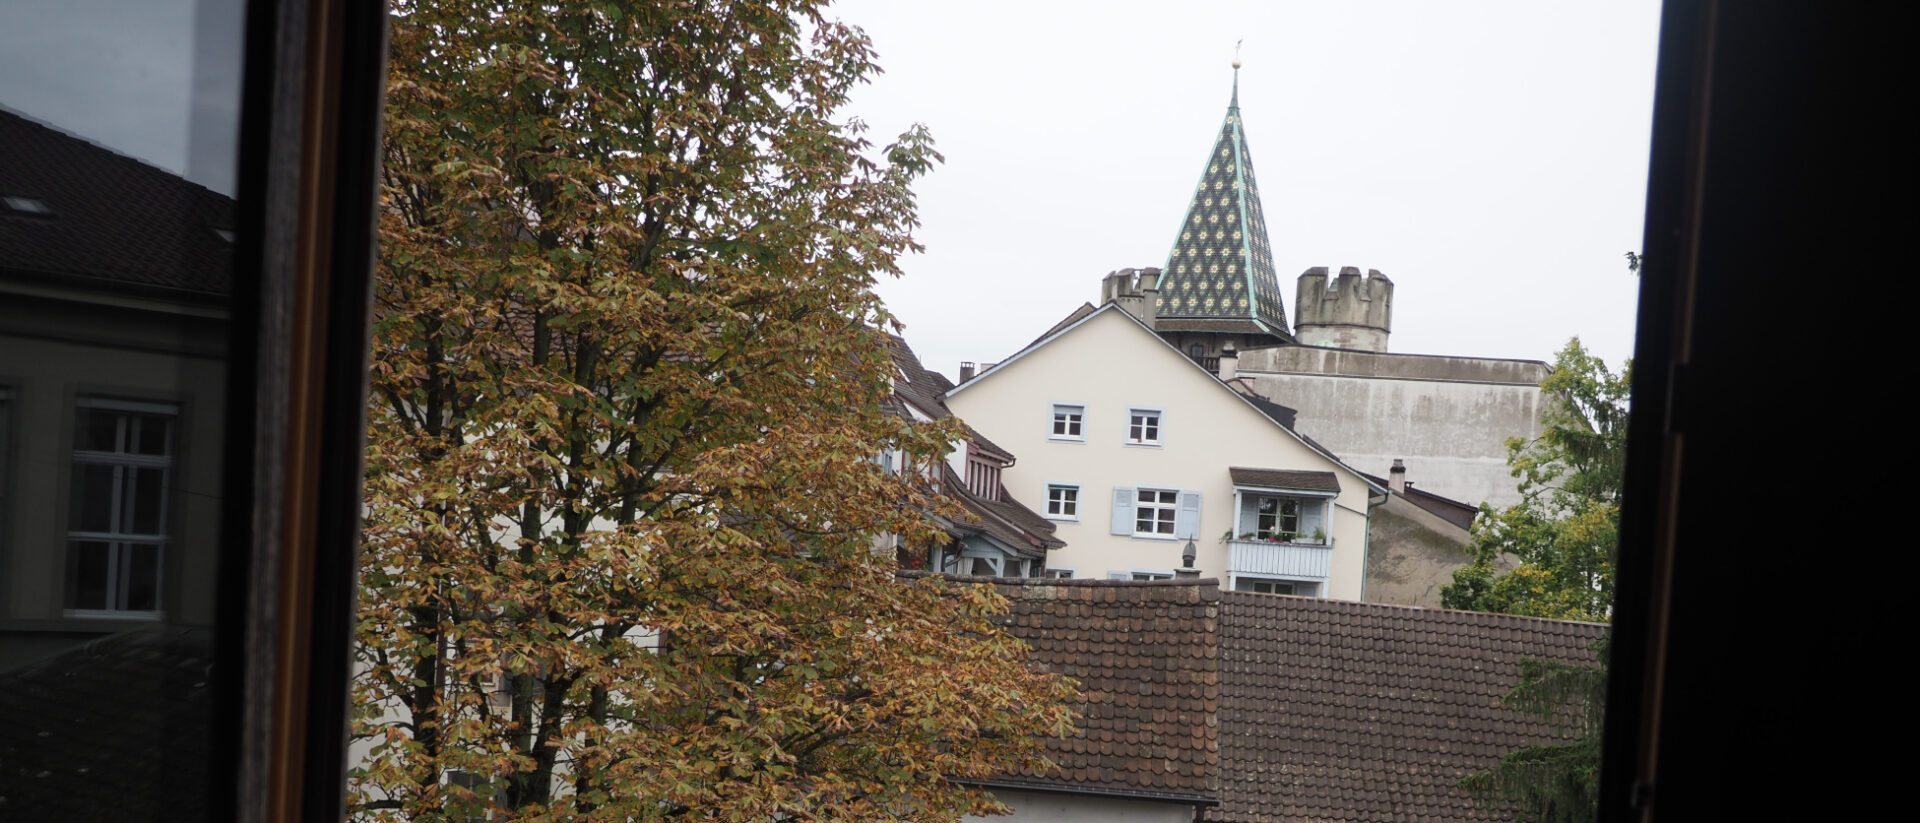 Aus dem Fenster ist der Turm des Spalentors erkennbar, durch das einst die Juden aus dem Elsass nach Basel gelangten.